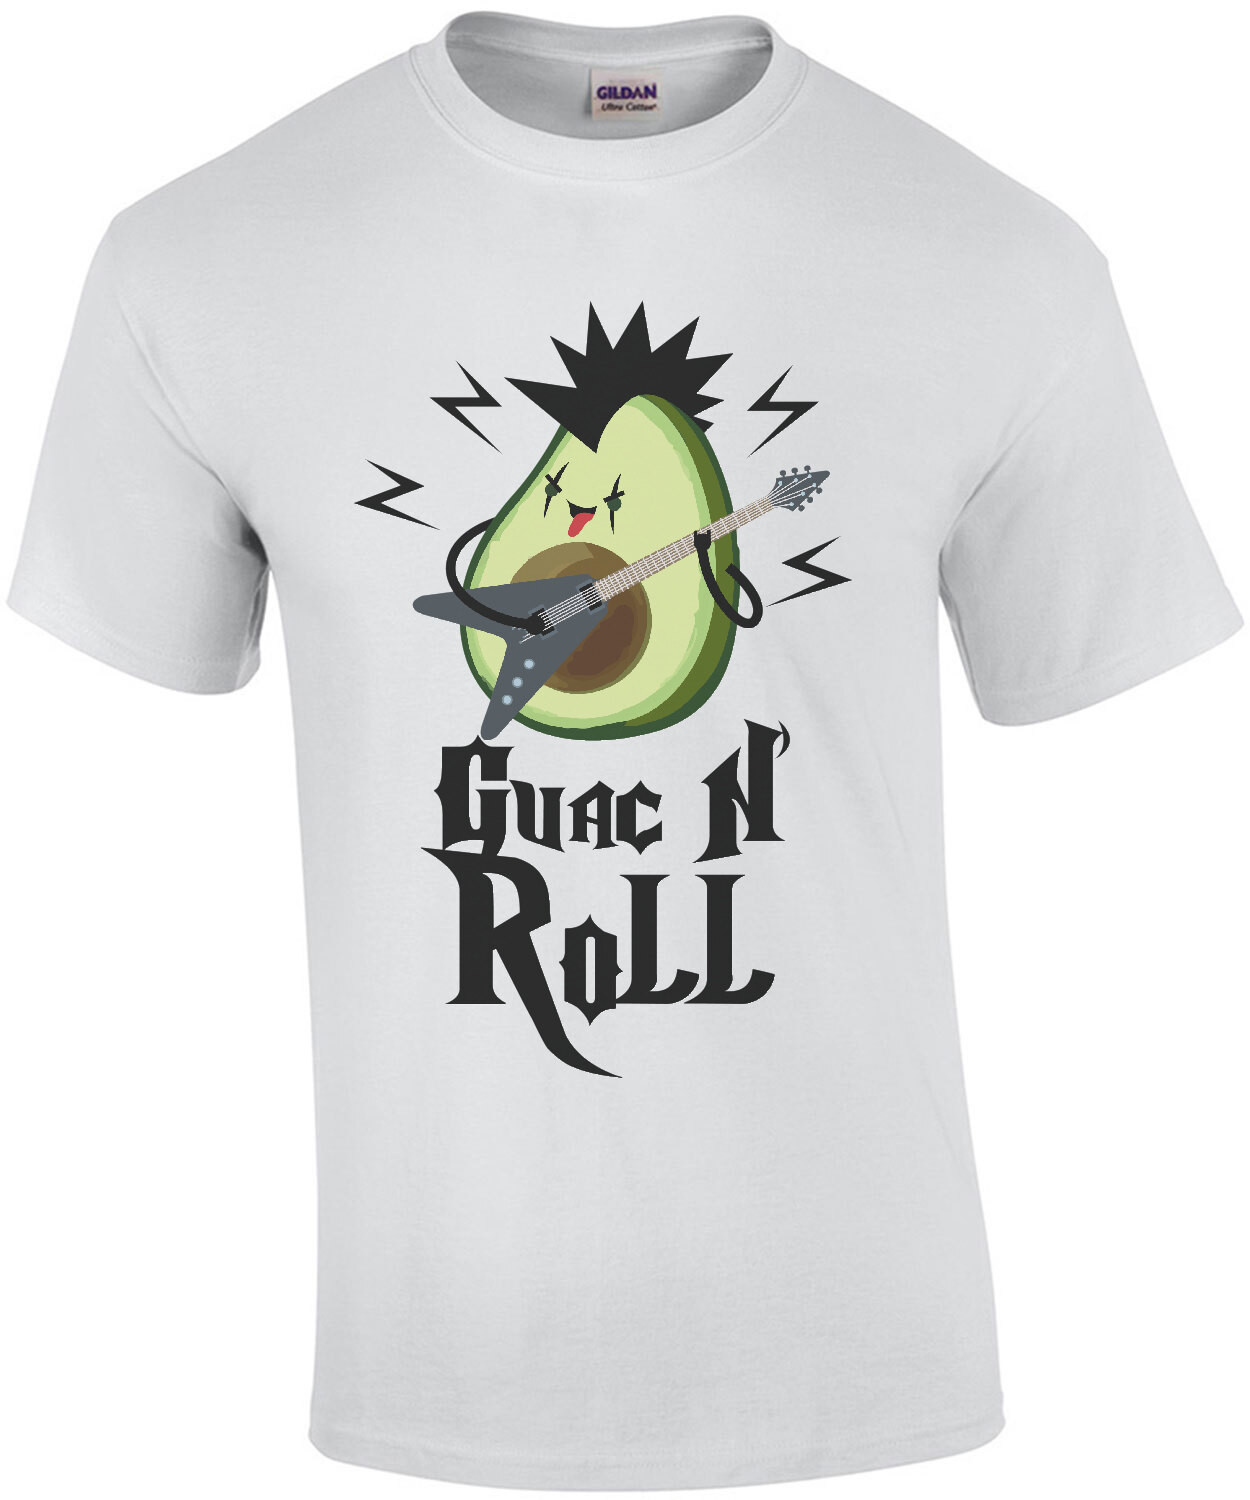 Guac N' Roll - Funny Pun T-Shirt